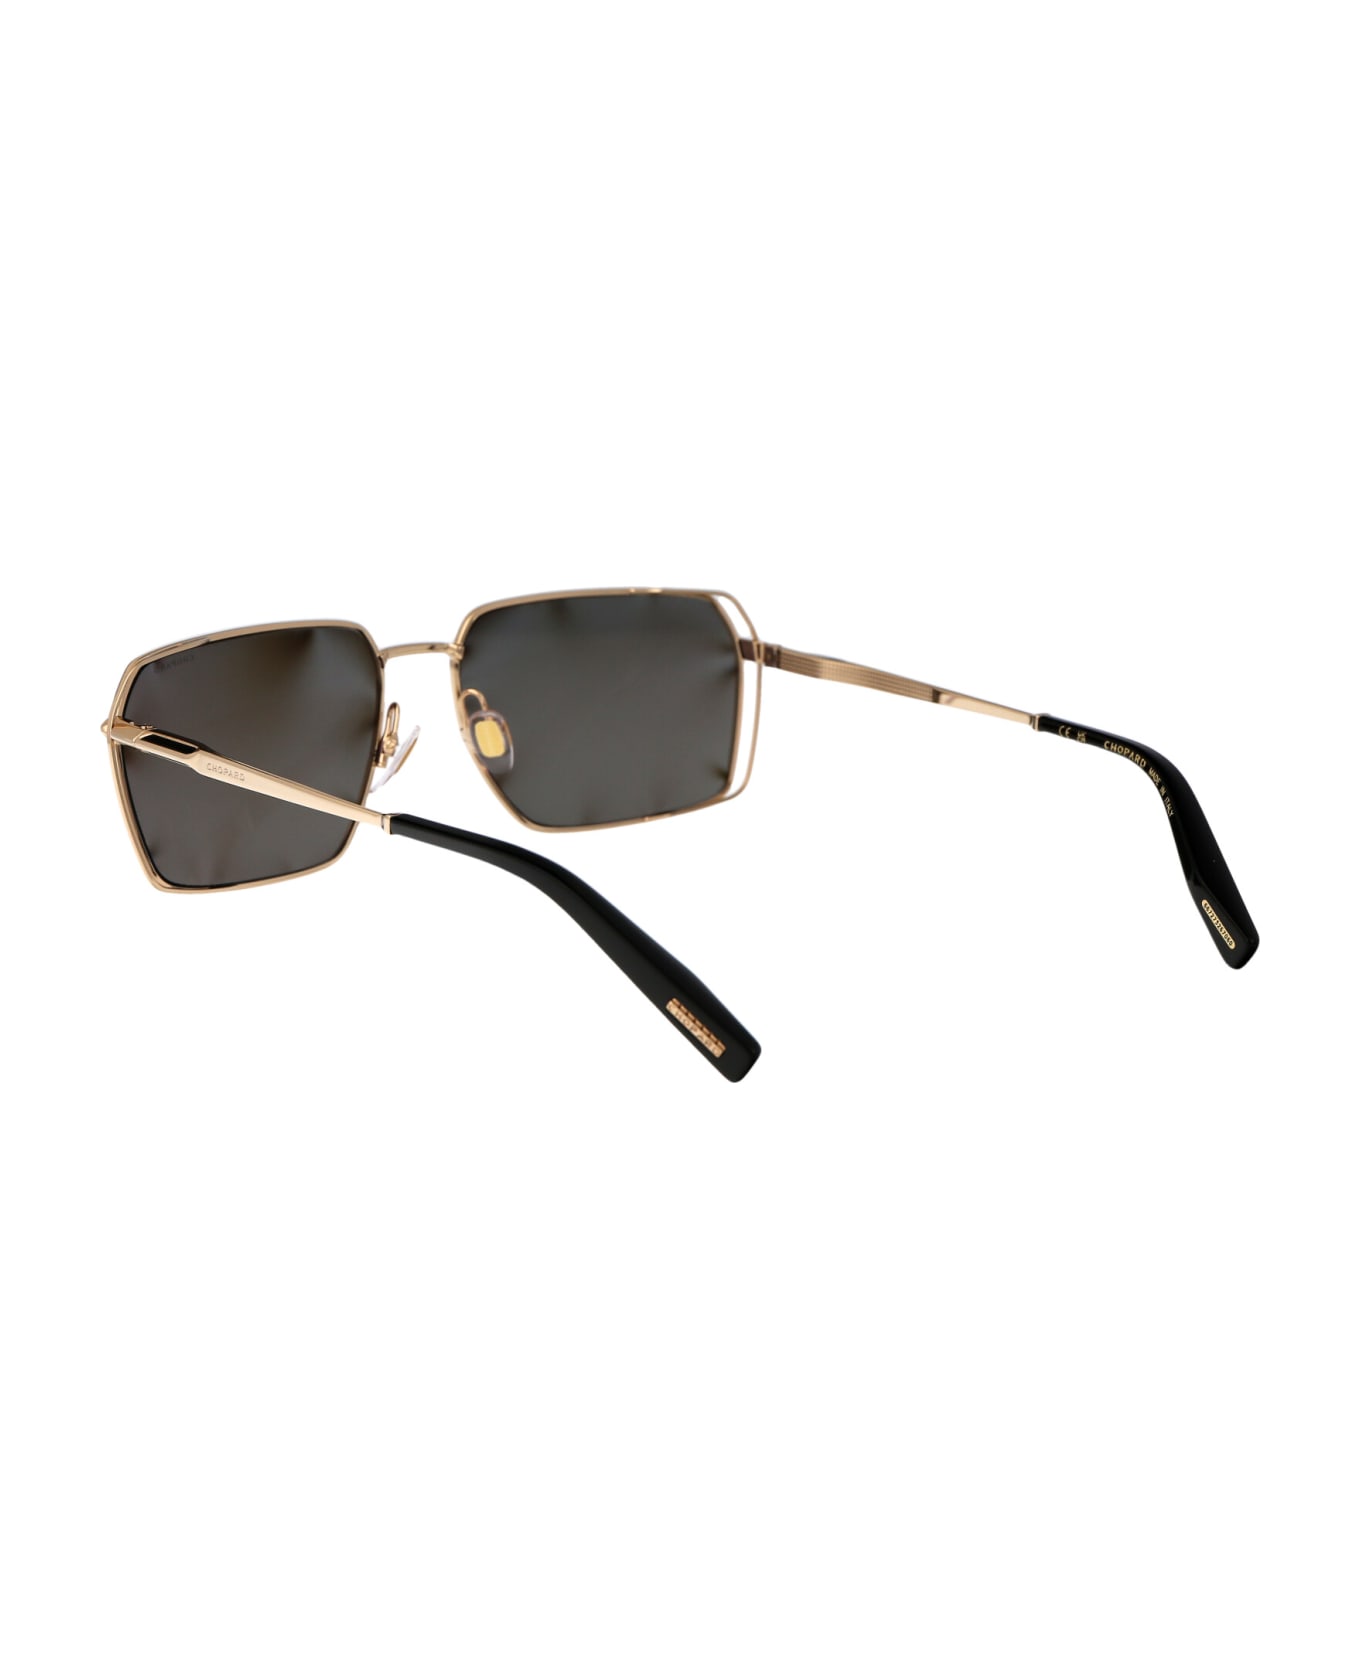 Chopard Schg90 Sunglasses - 300P GOLD